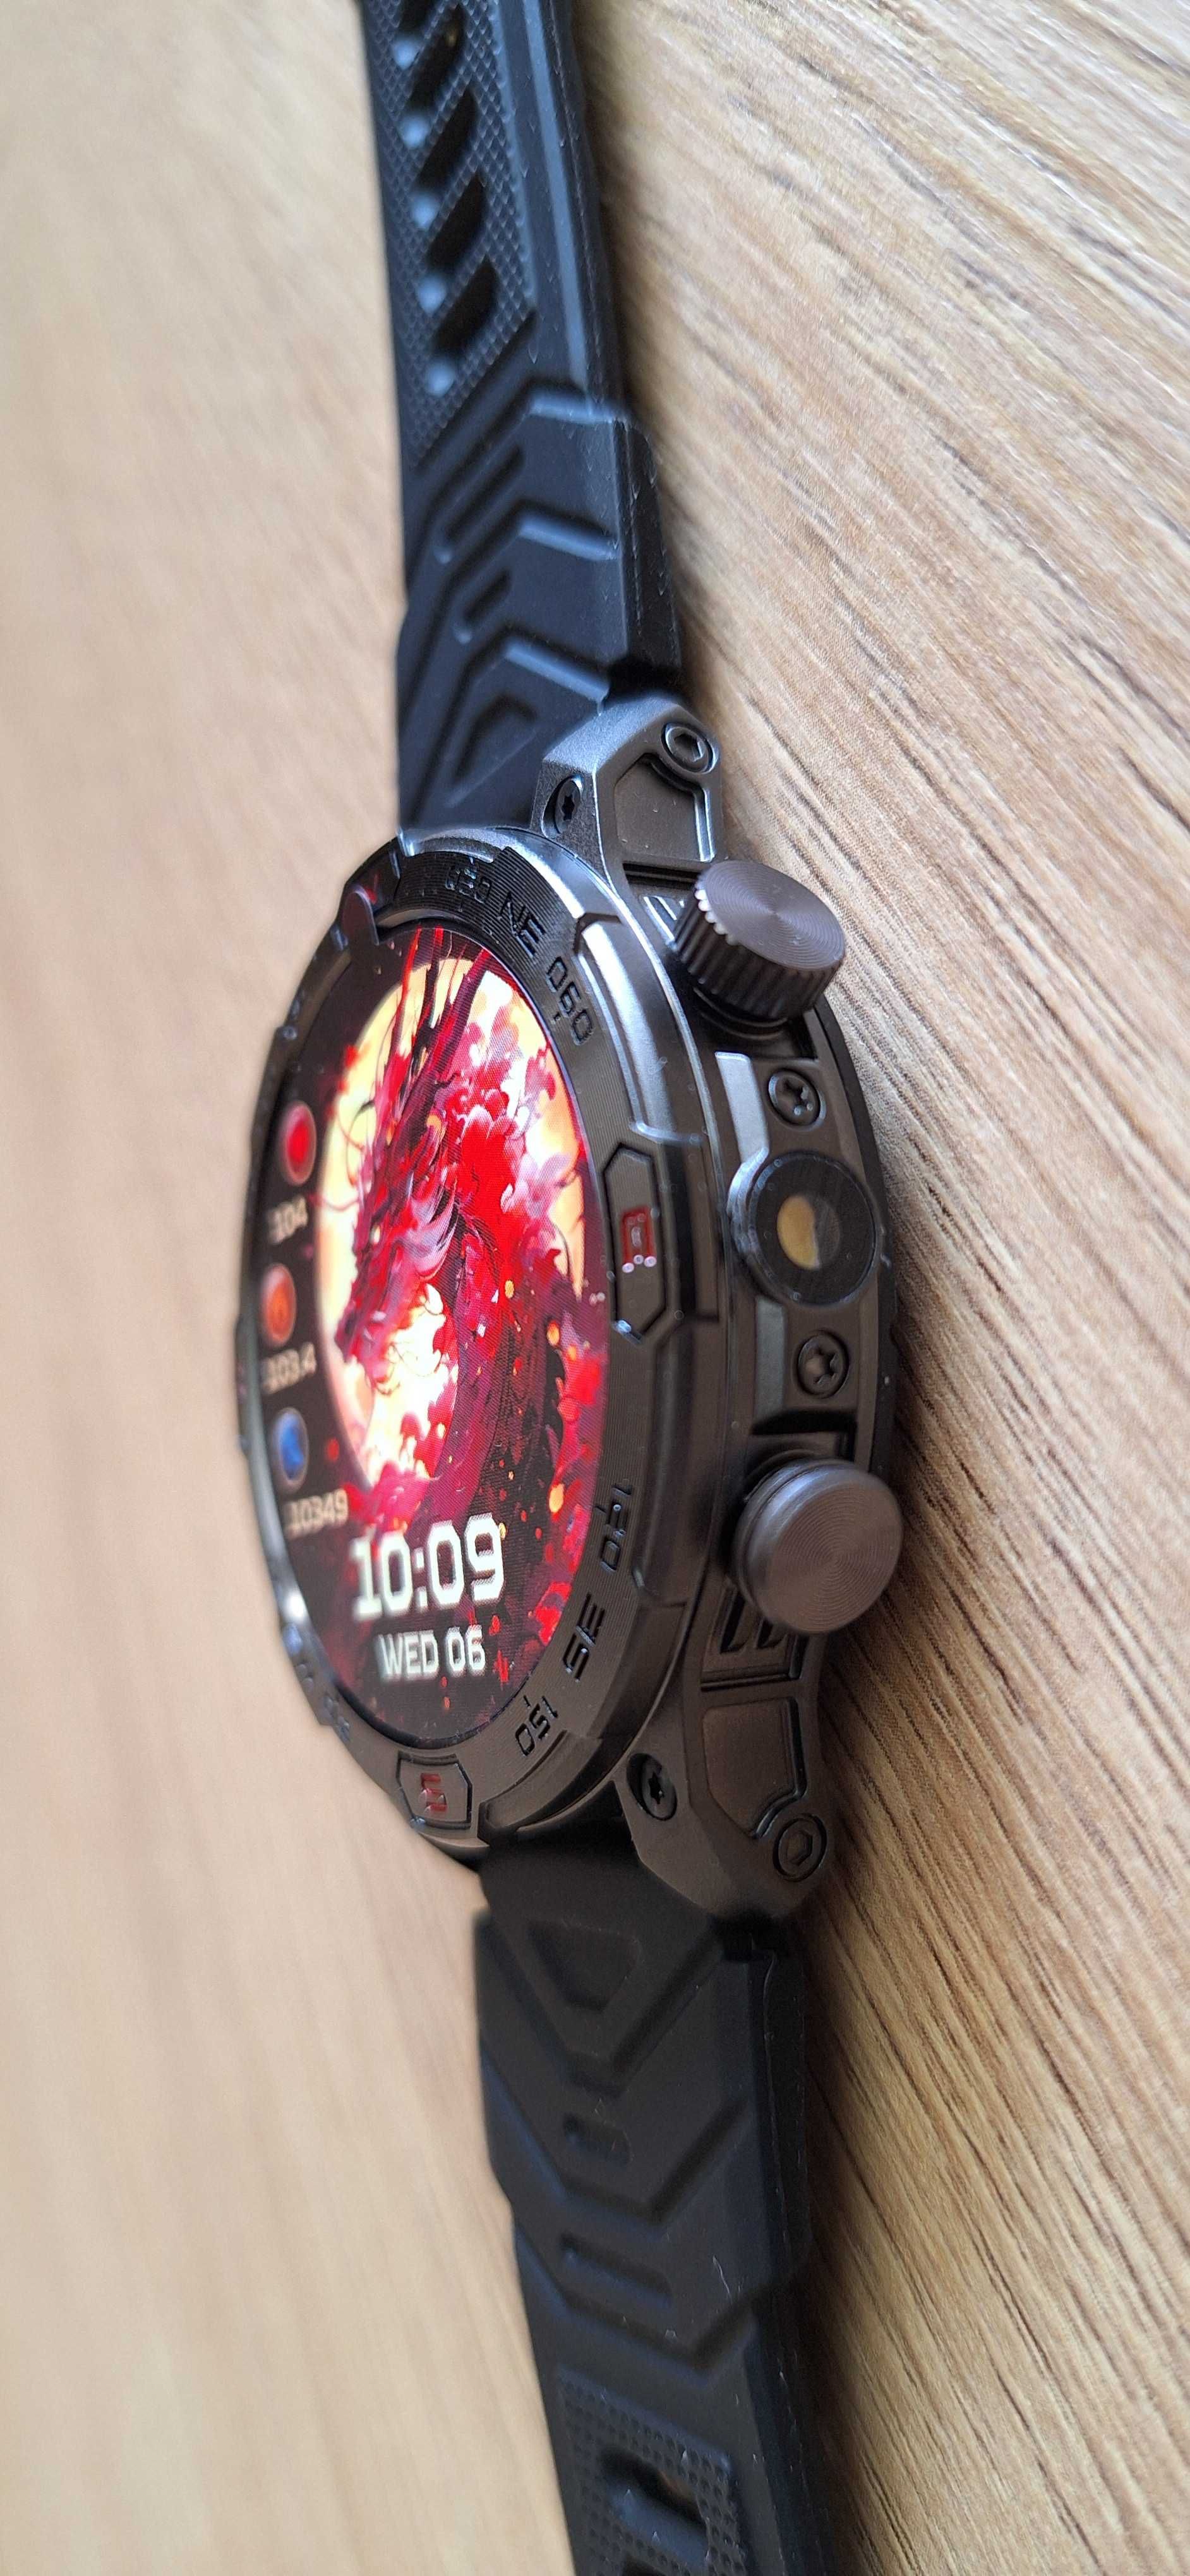 Nowy smartwatch 1,43 cala podwójny wyświetlacz Amoled latarka